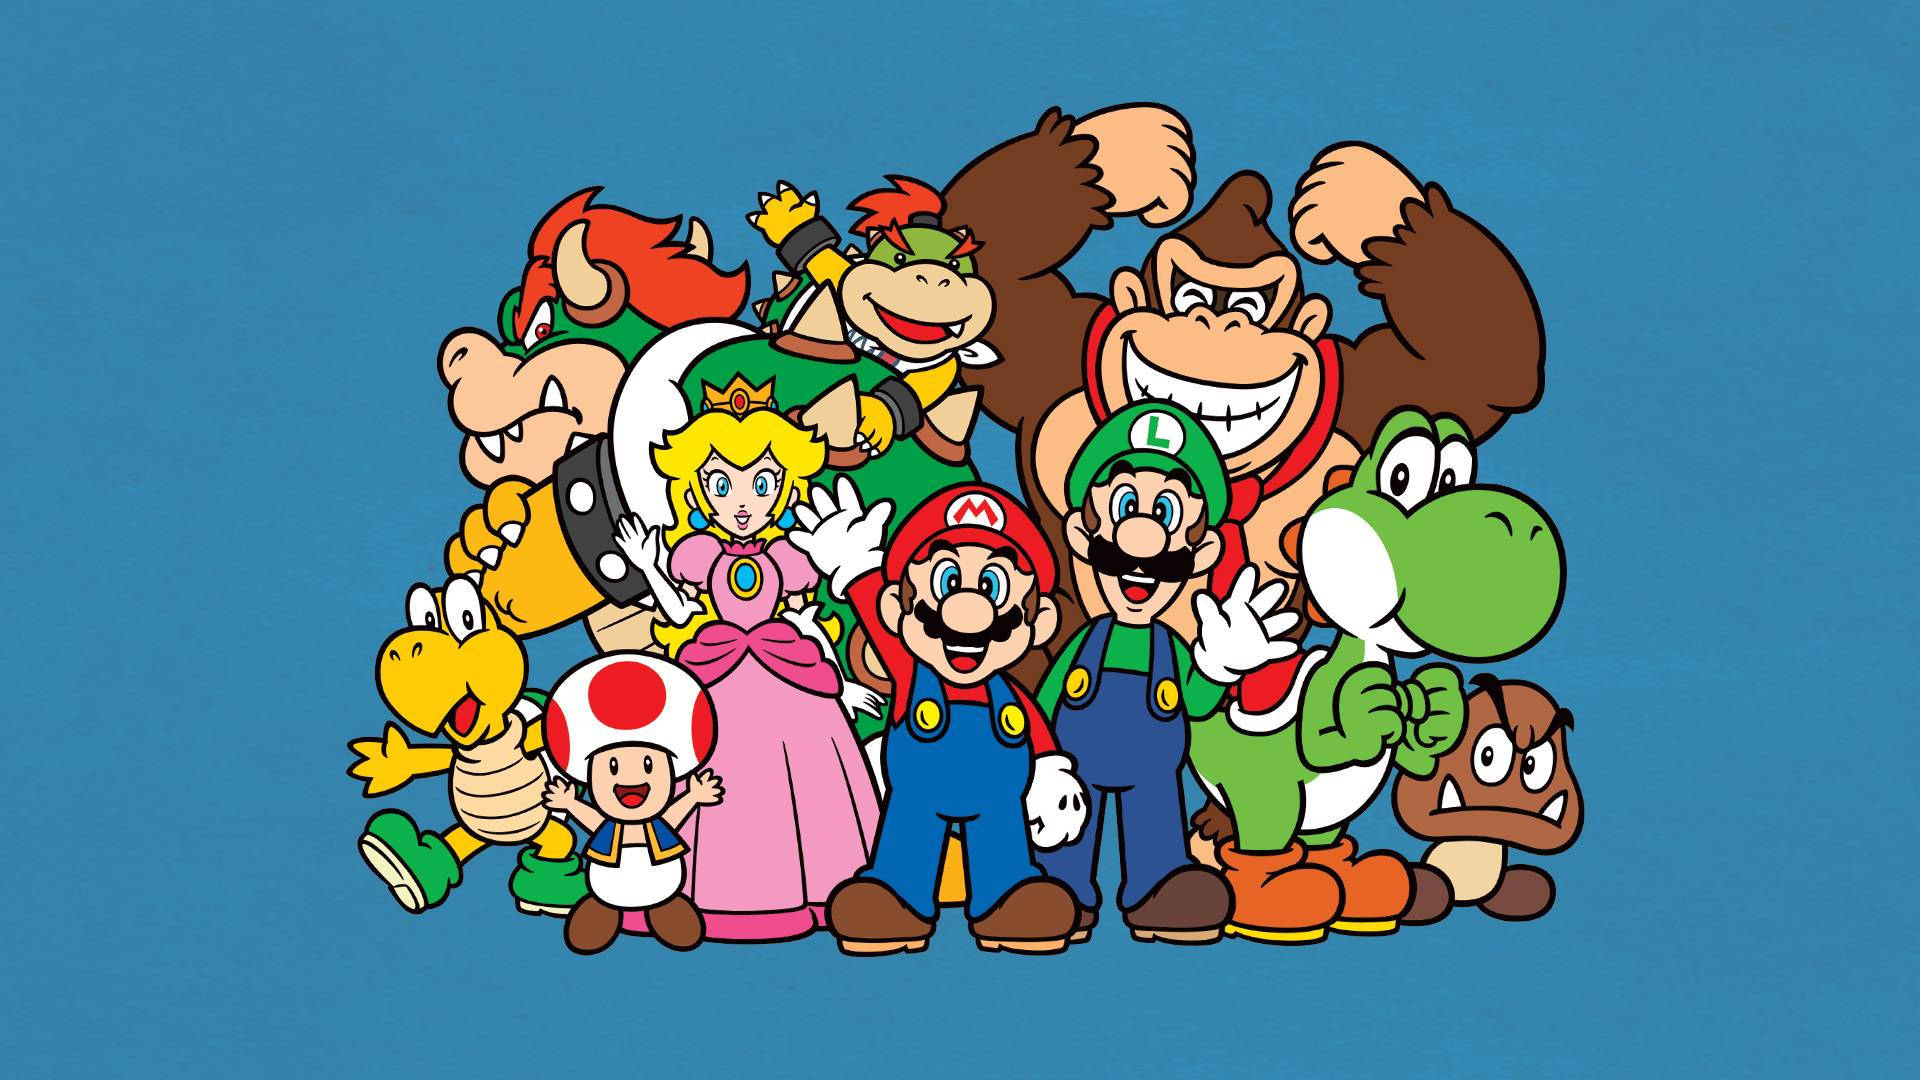 Nintendo Happy Super Mario